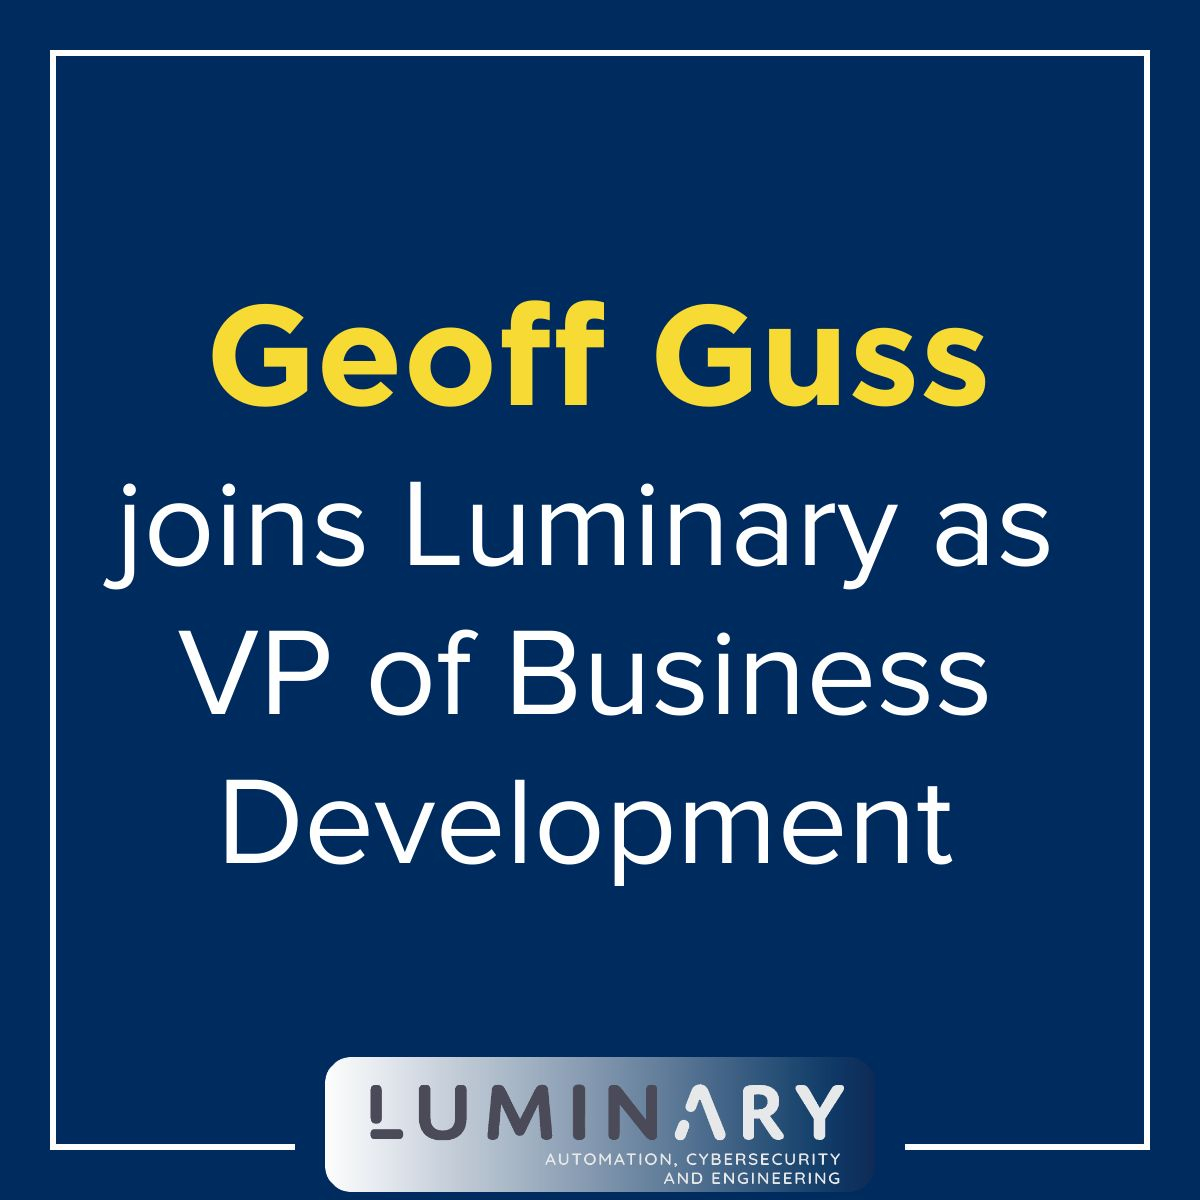 Geoff Guss joins luminary as vp of business development